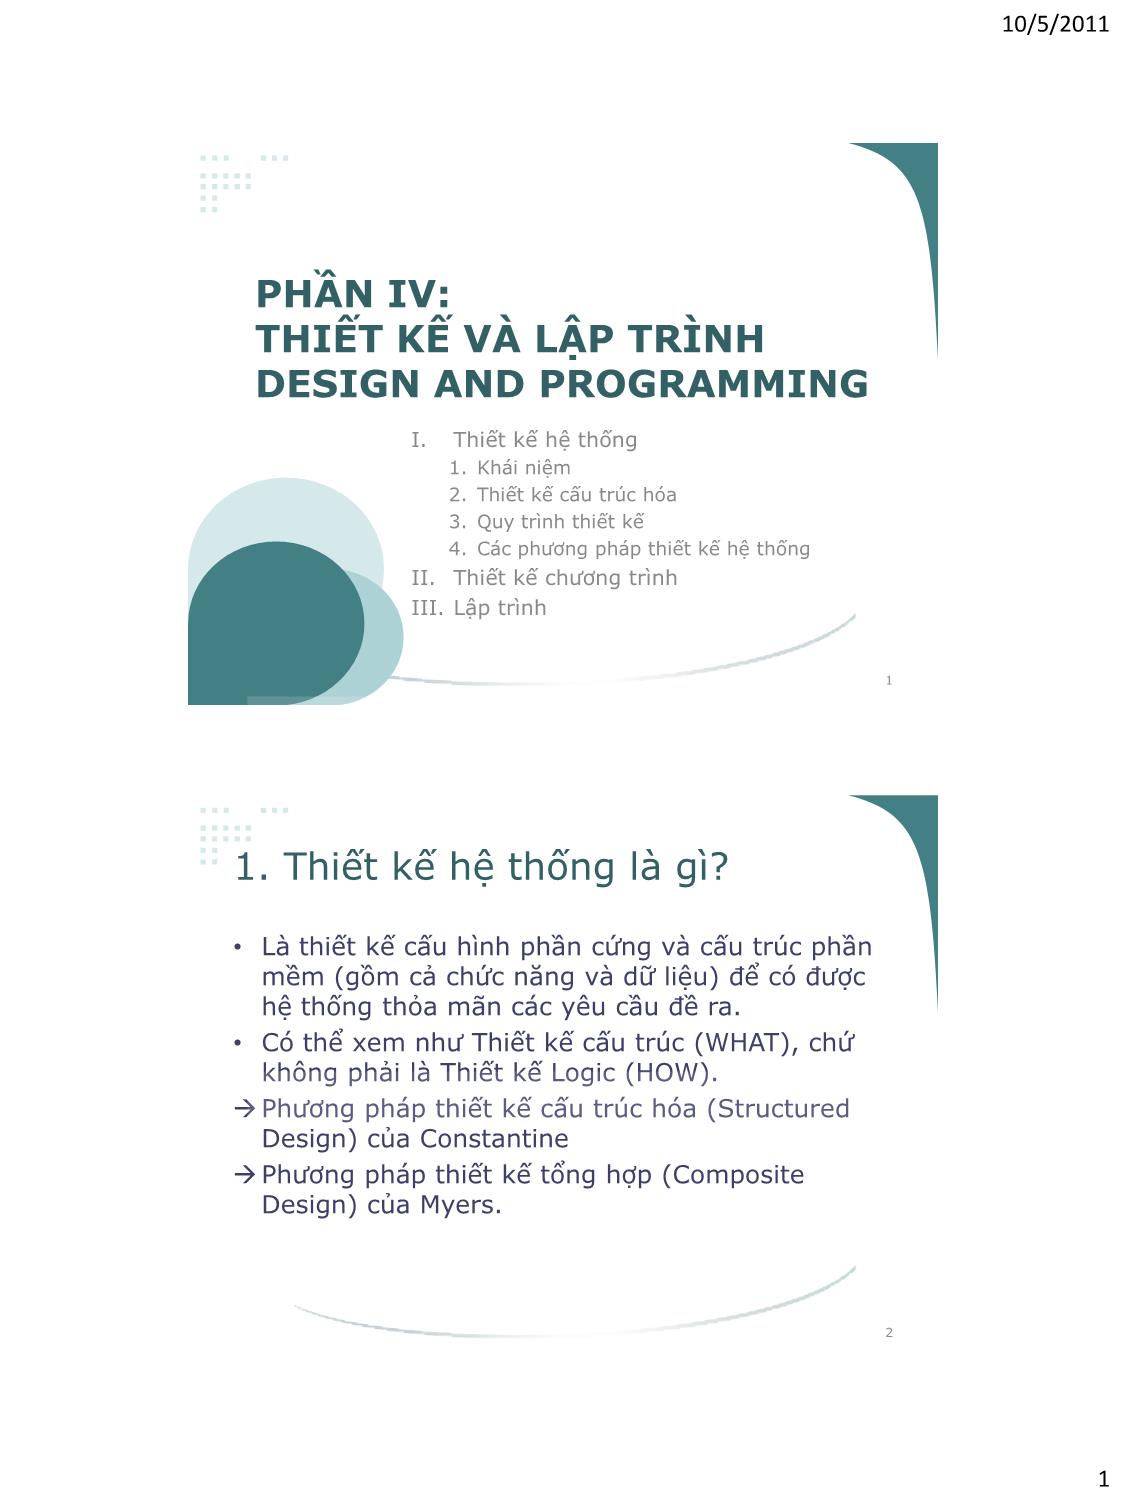 Bài giảng Công nghệ phần mềm - Phần IV: Thiết kế và lập trình - Vũ Thị Hương Giang trang 1